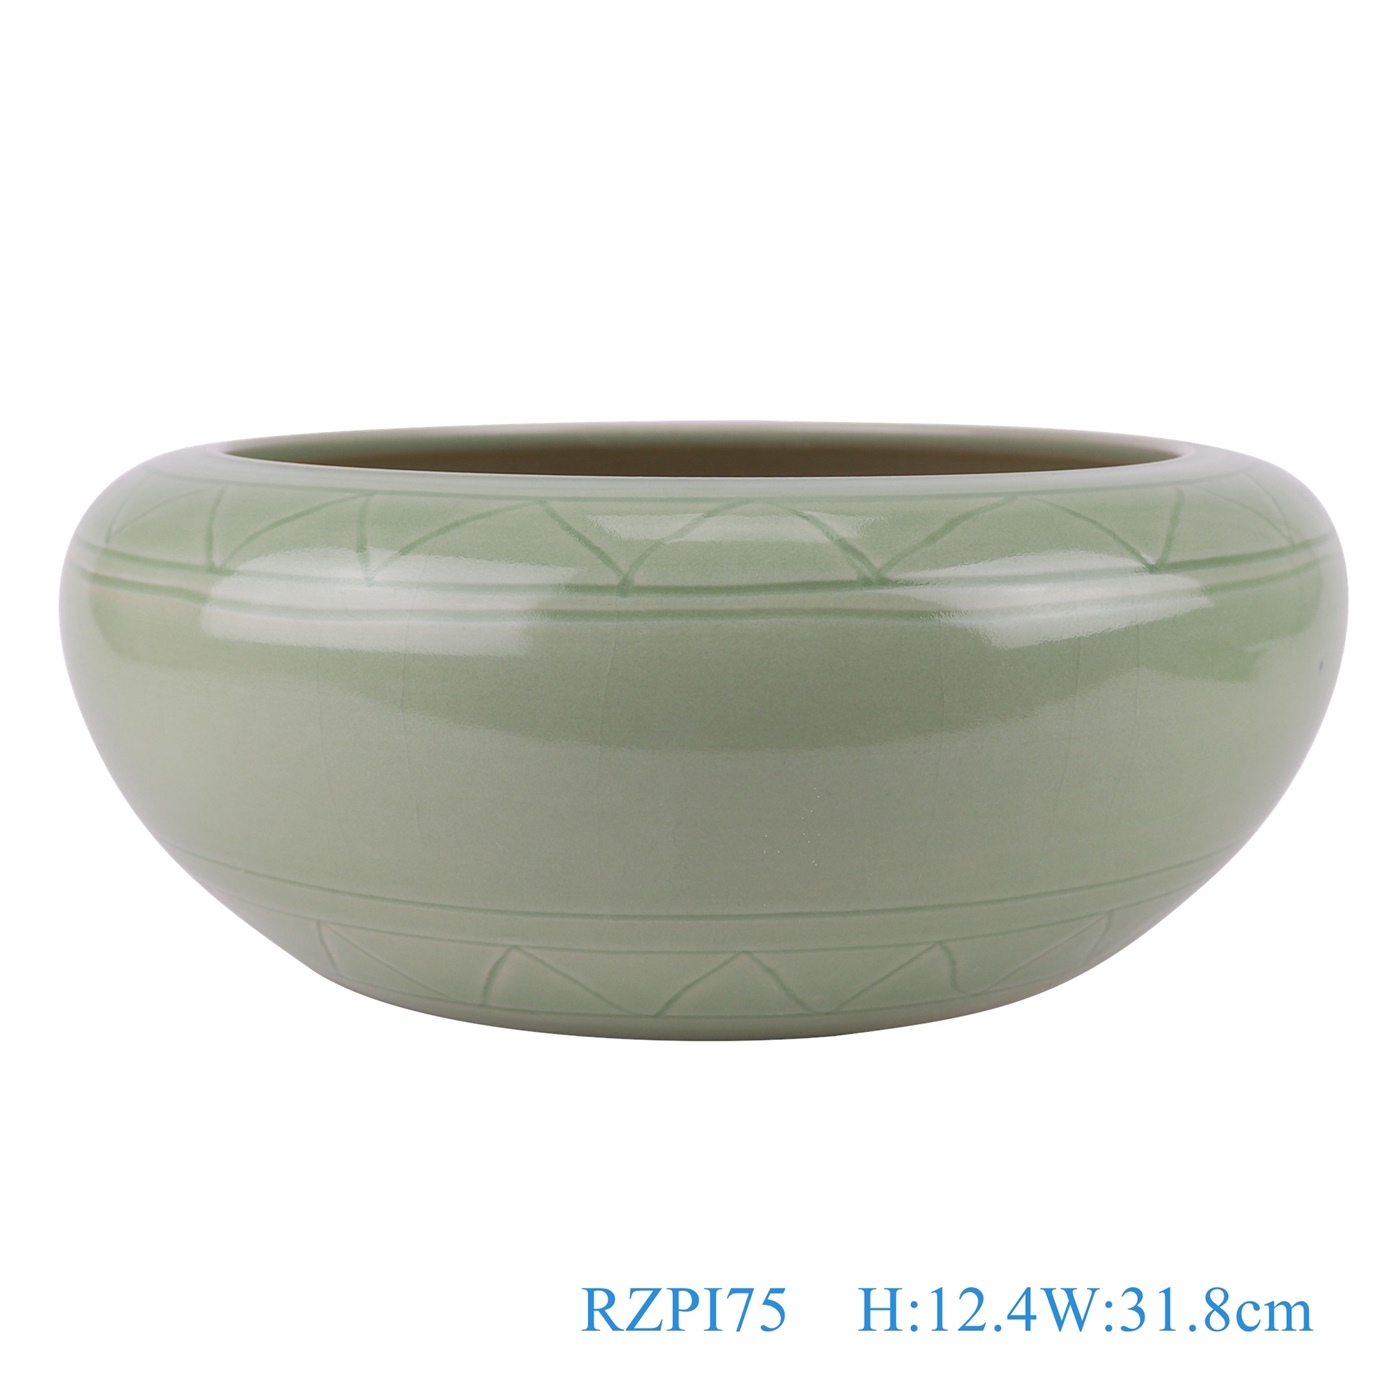 青釉雕刻线条纹水浅笔洗缸，产品编号：RZPI75       产品尺寸(单位cm):  高12.4直径31.8口径底径20.7重量3.15KG